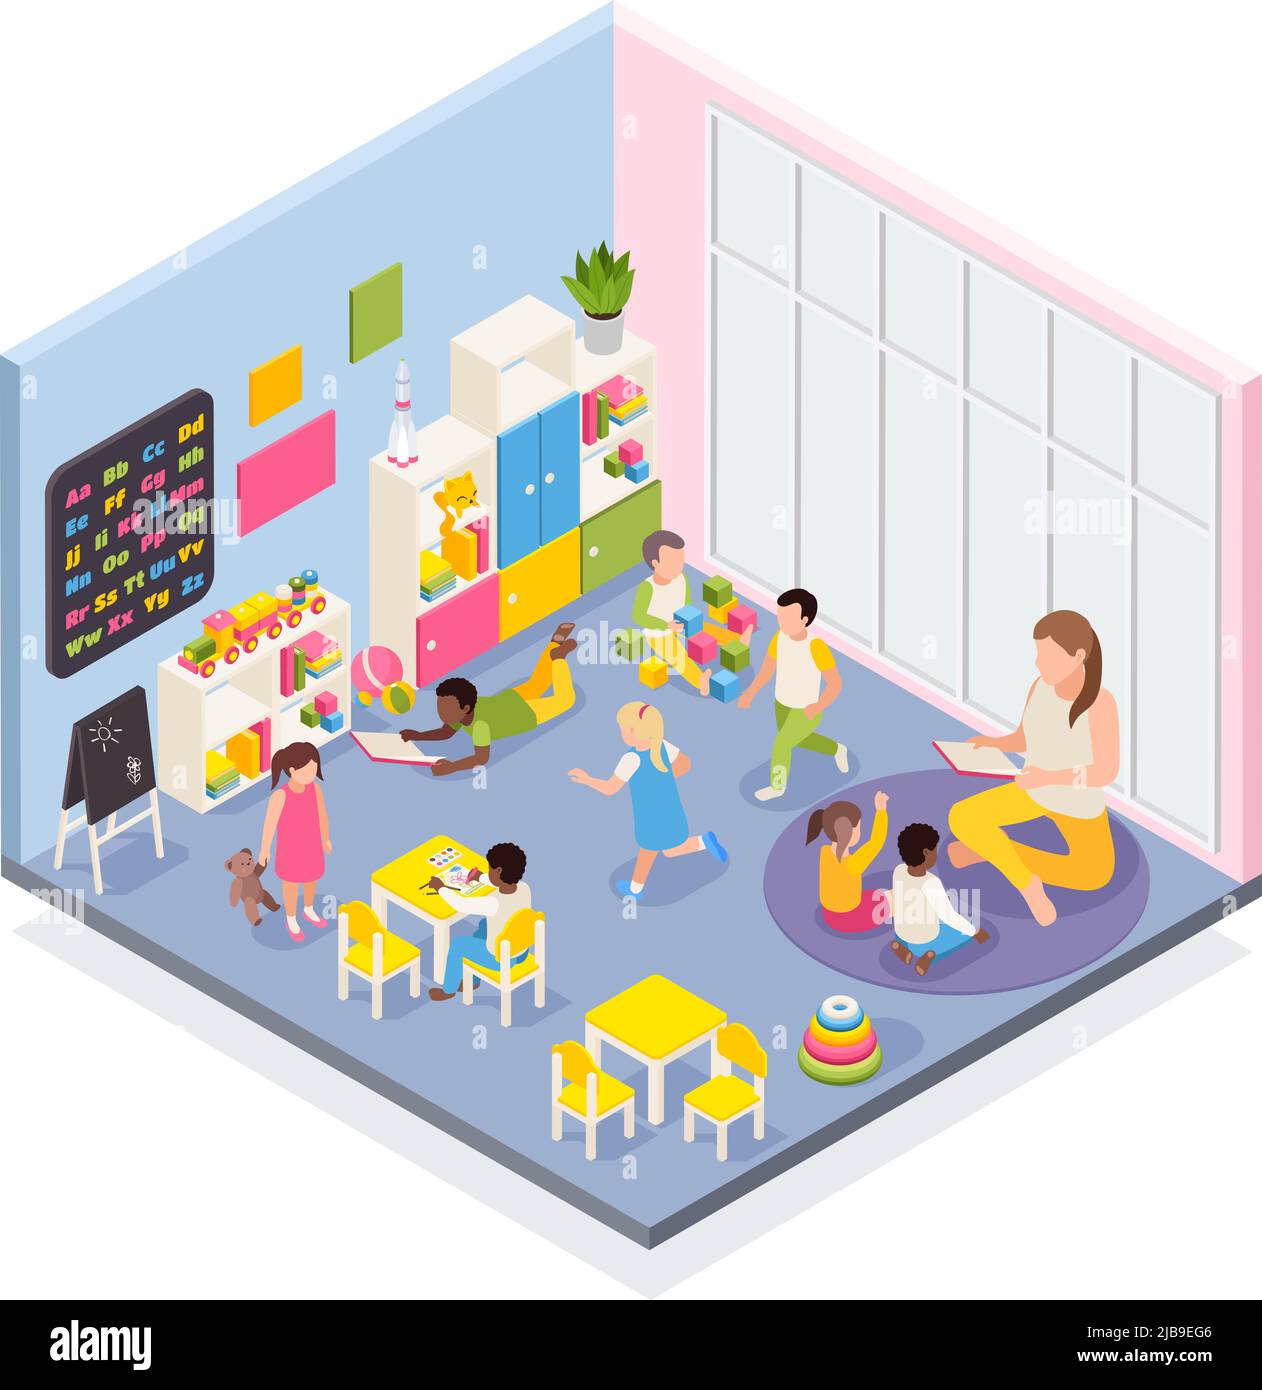 Kindergarten isometrische Komposition mit Innenansicht des Raumes mit spielenden Kindern und Erzieherin menschlichen Charakteren Vektor-Illustration Stock Vektor